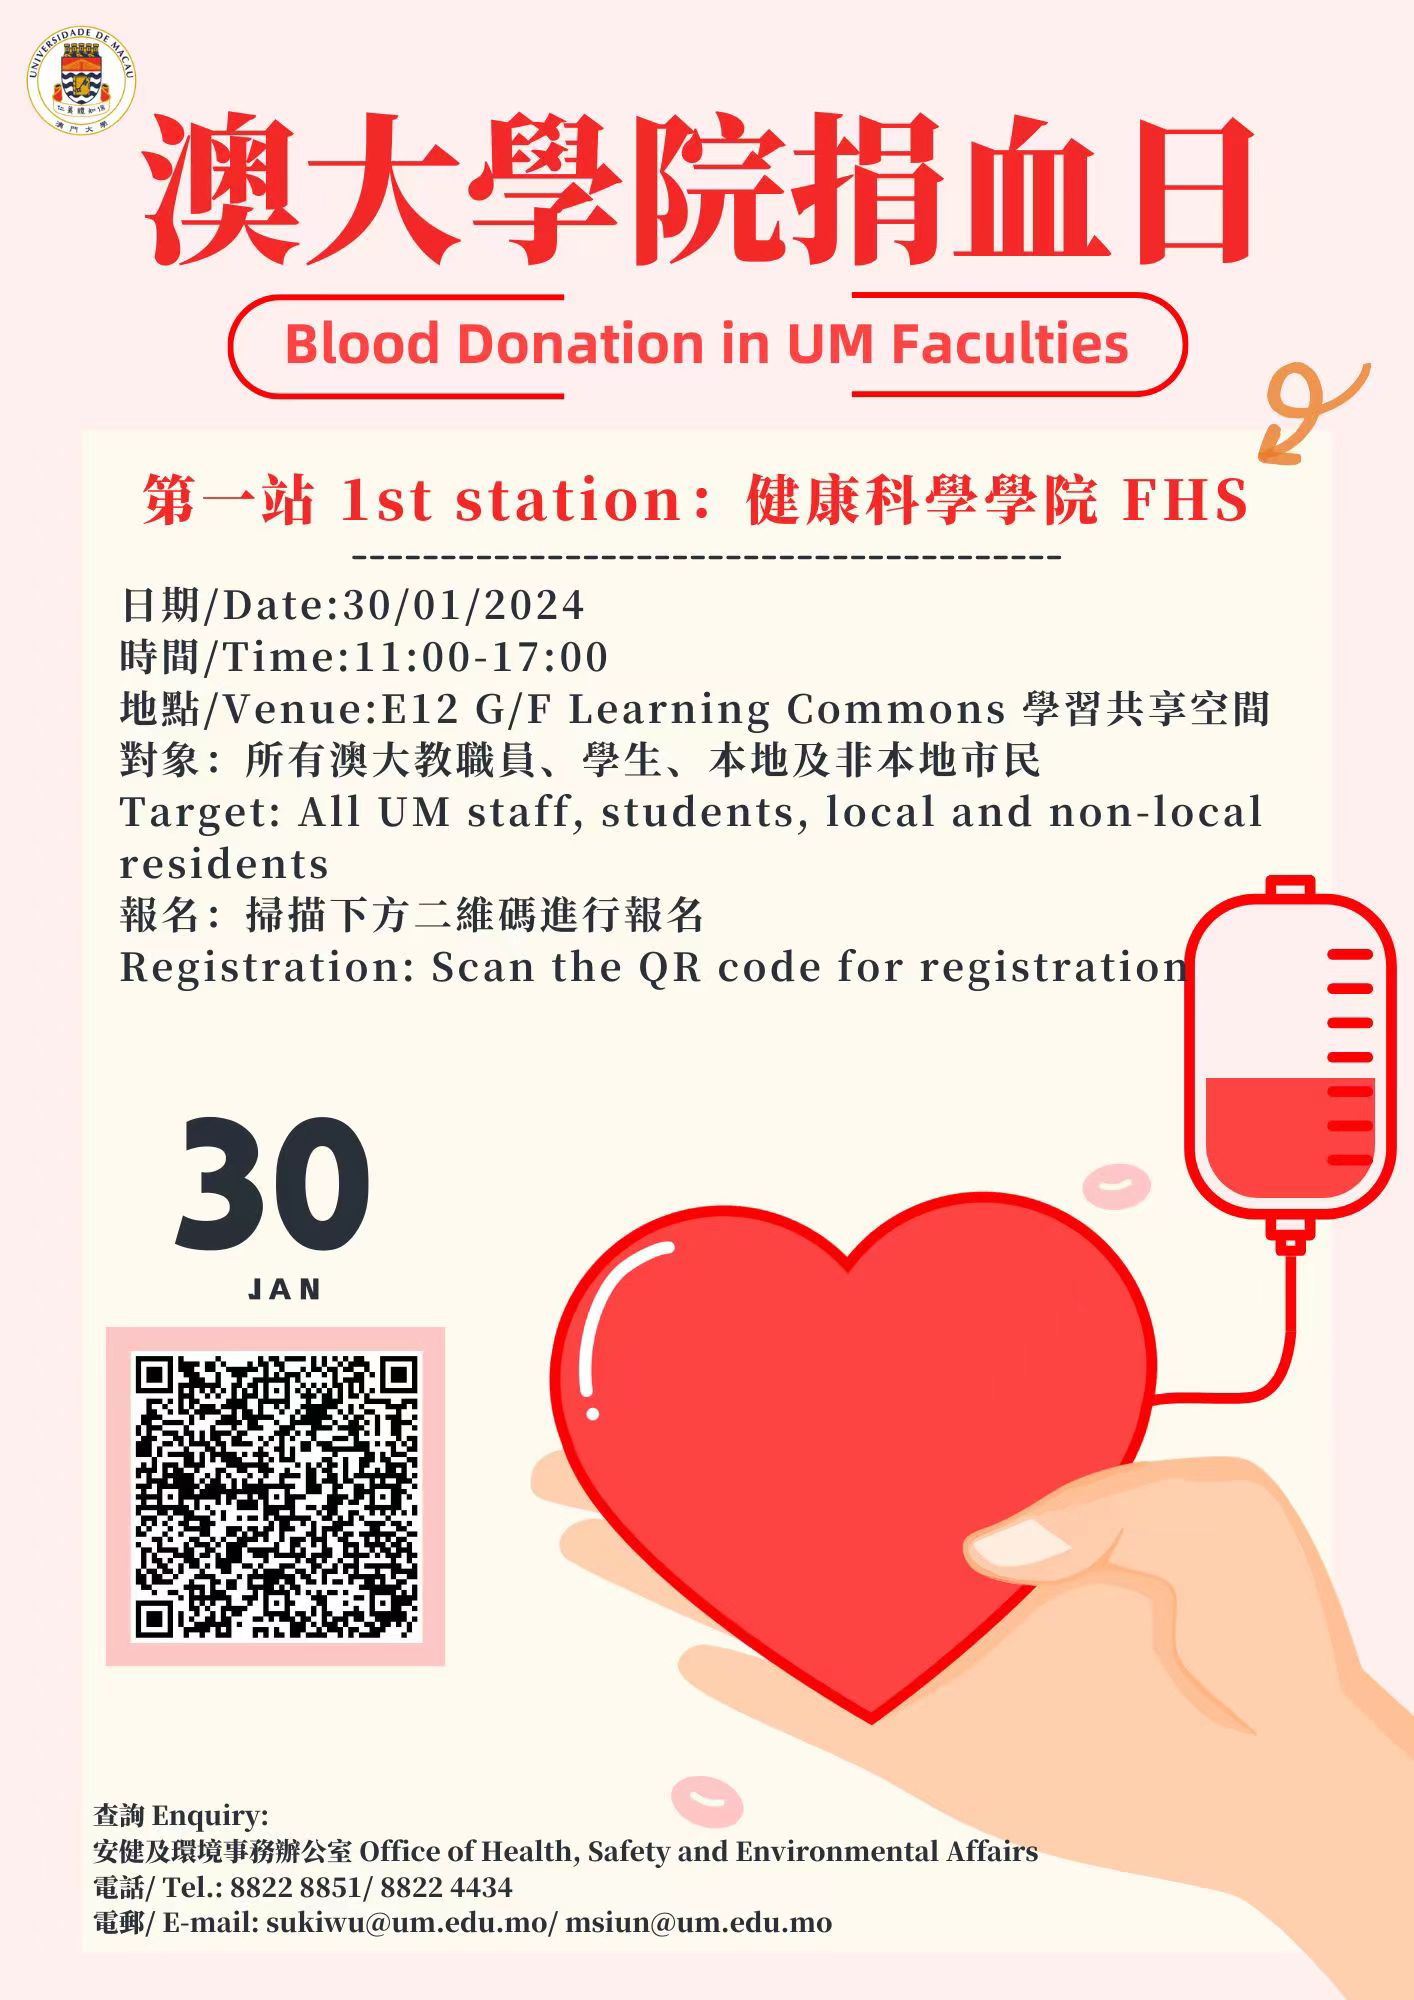 澳門大學捐血日健康科學學院站